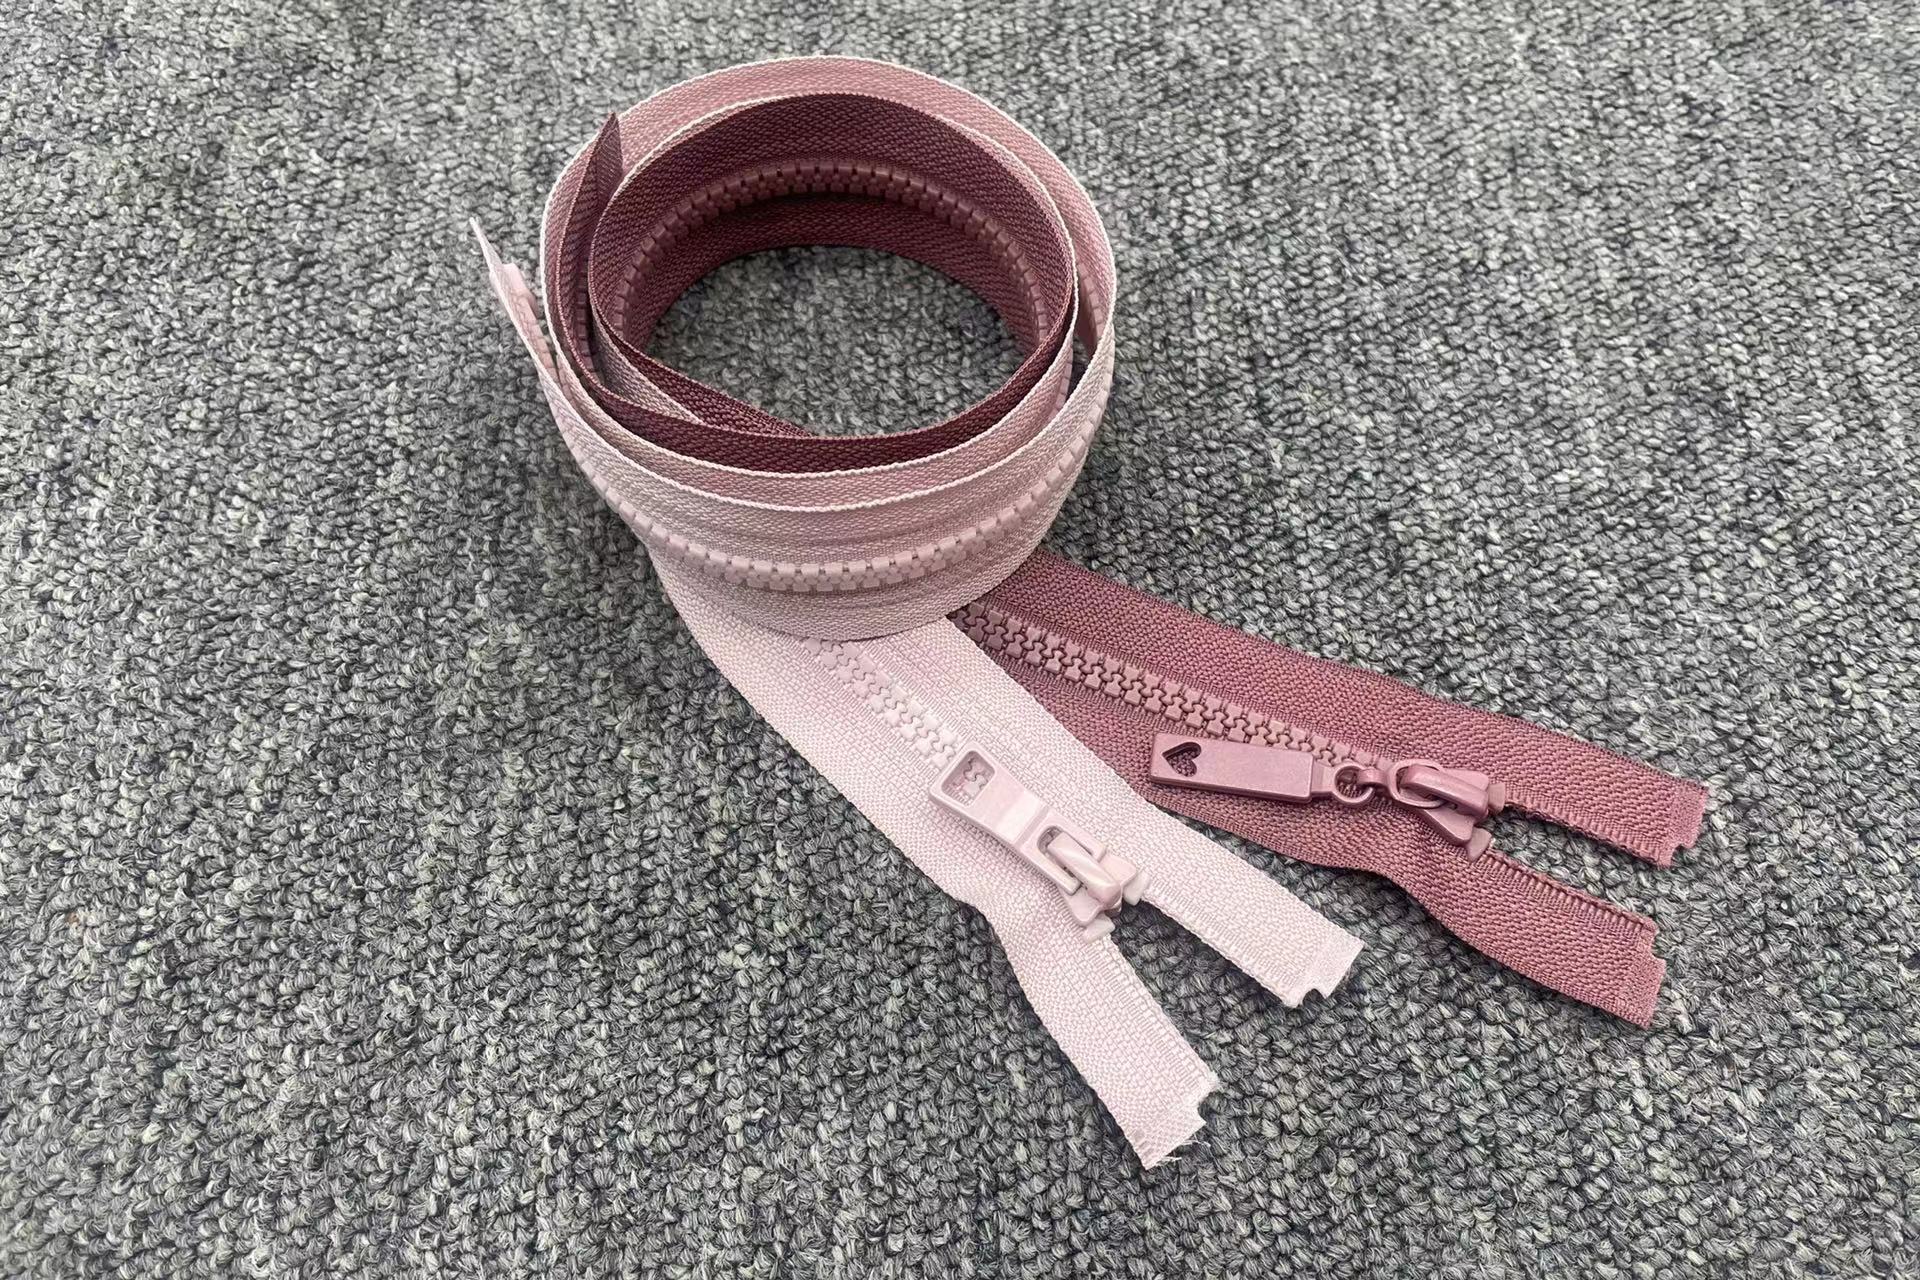 ZIPHOO #5 Pink Open-end Plastic Zipper